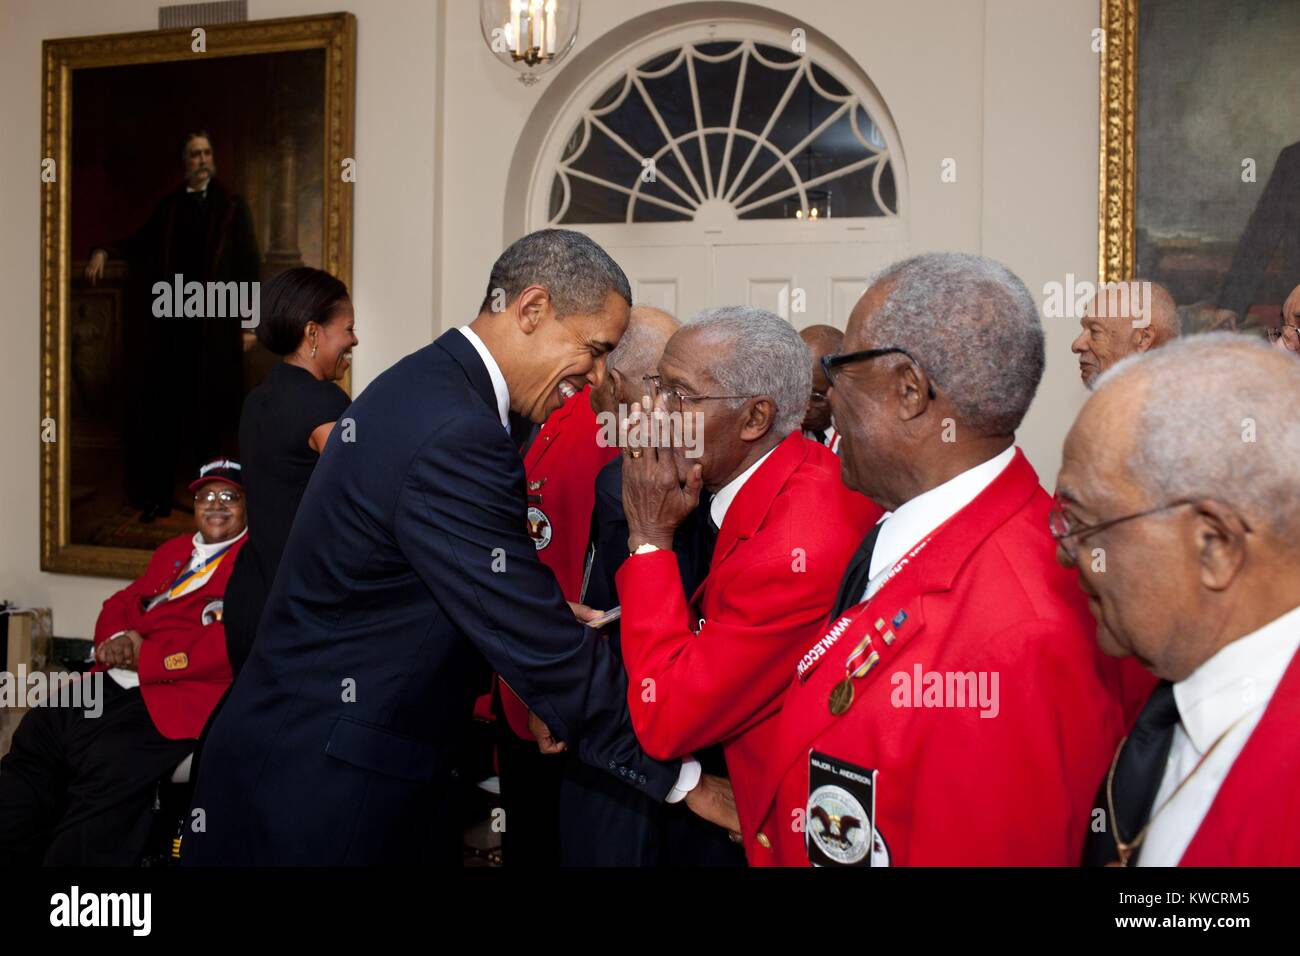 Präsident Barack und Michelle Obama grüße Tuskegee Airmen. Jan. 13, 2012. Sie waren an einer Vorführung des Films Red Tails, im Weißen Haus Familie Theater. (BSLOC 2015 3 76) Stockfoto